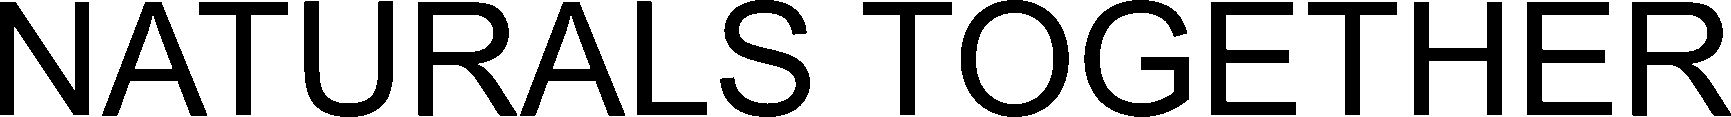 Trademark Logo NATURALS TOGETHER